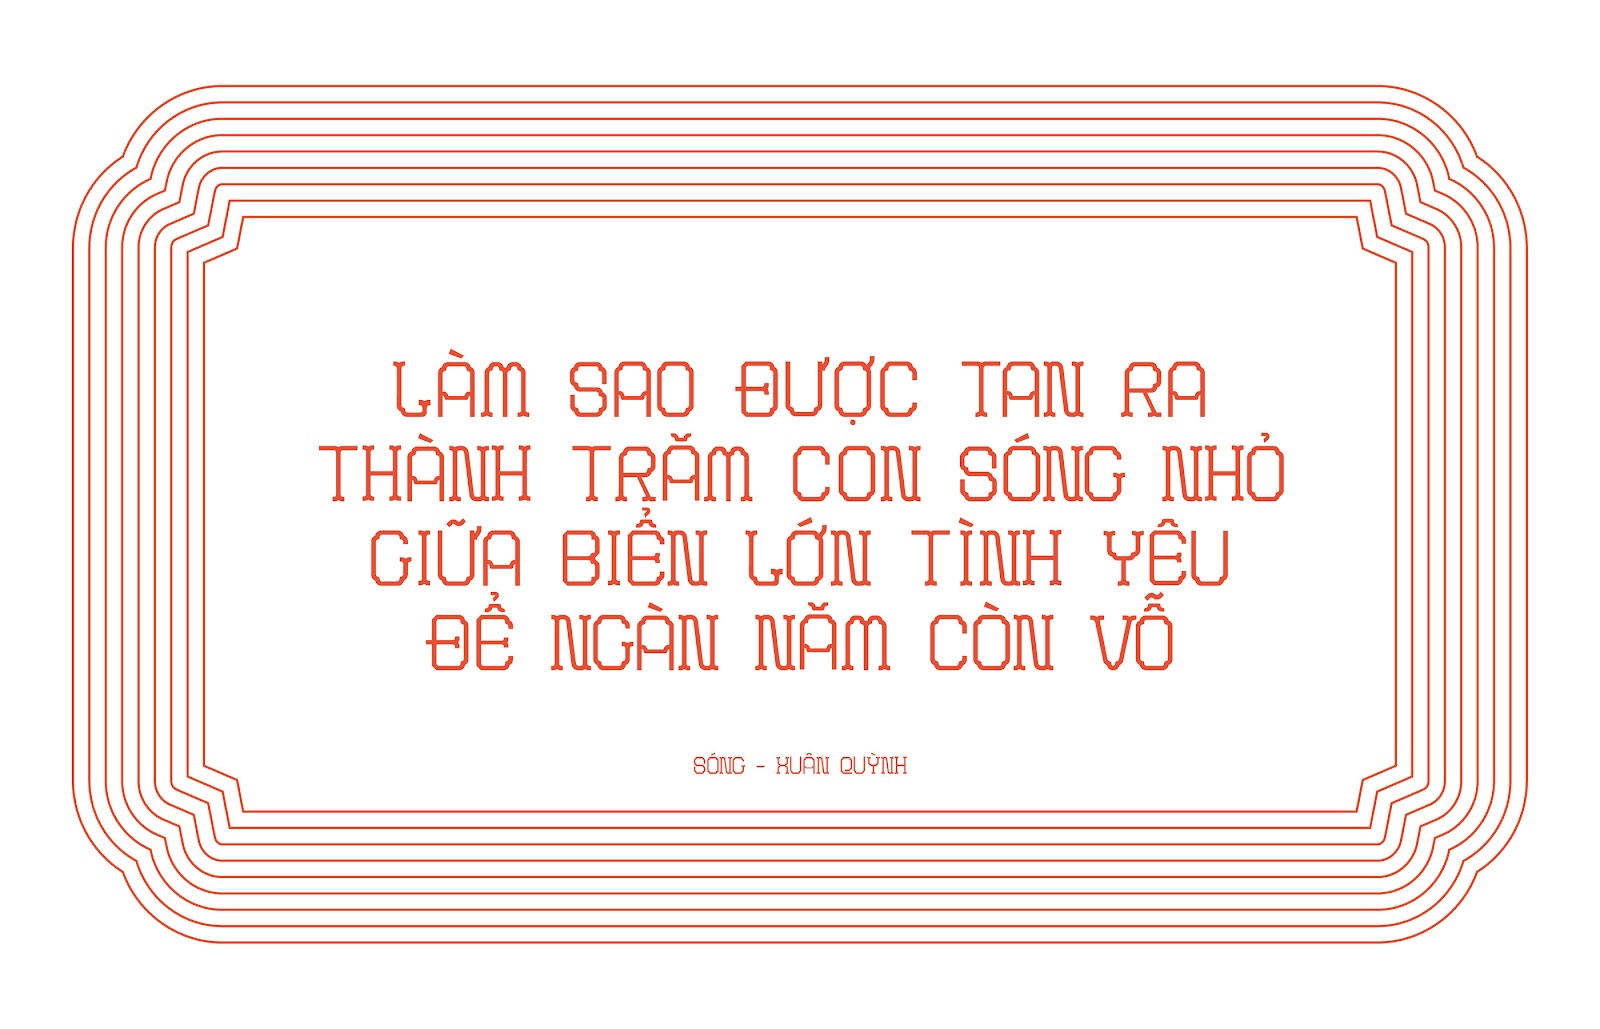 Font Bong Gio - Phông Việt lấm cảm hứng từ gạch Bông Gió